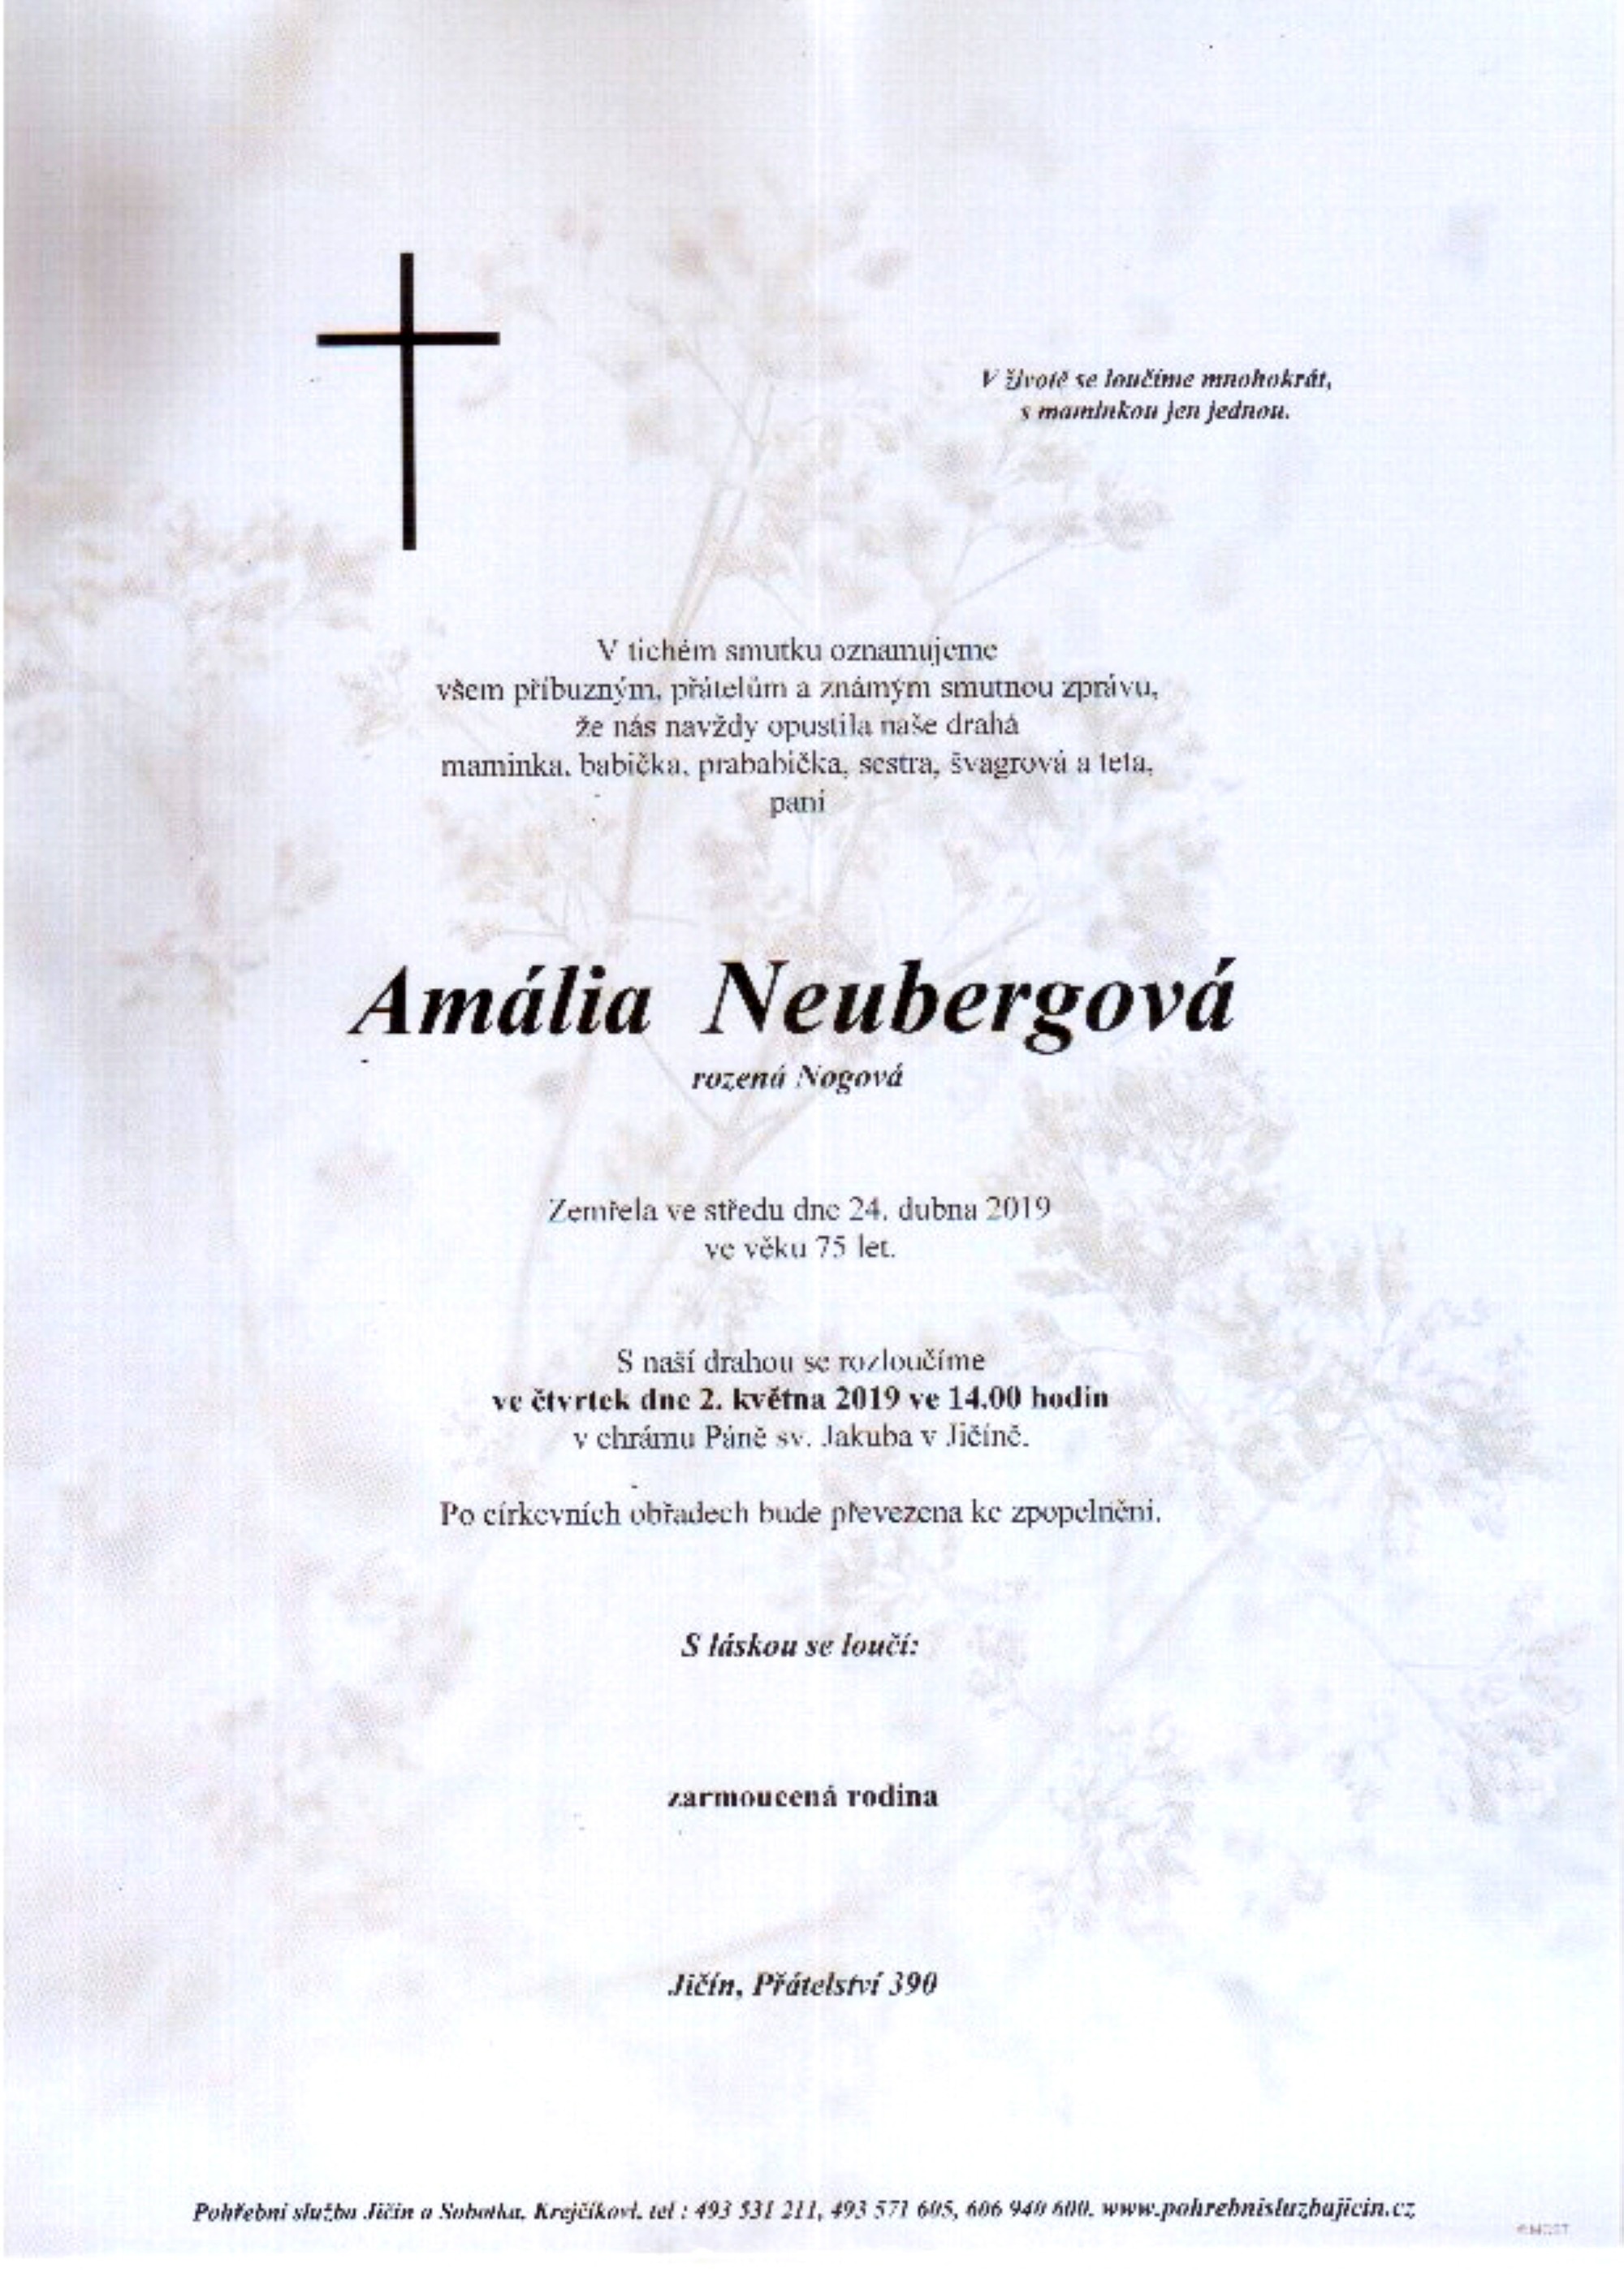 Amália Neubergová